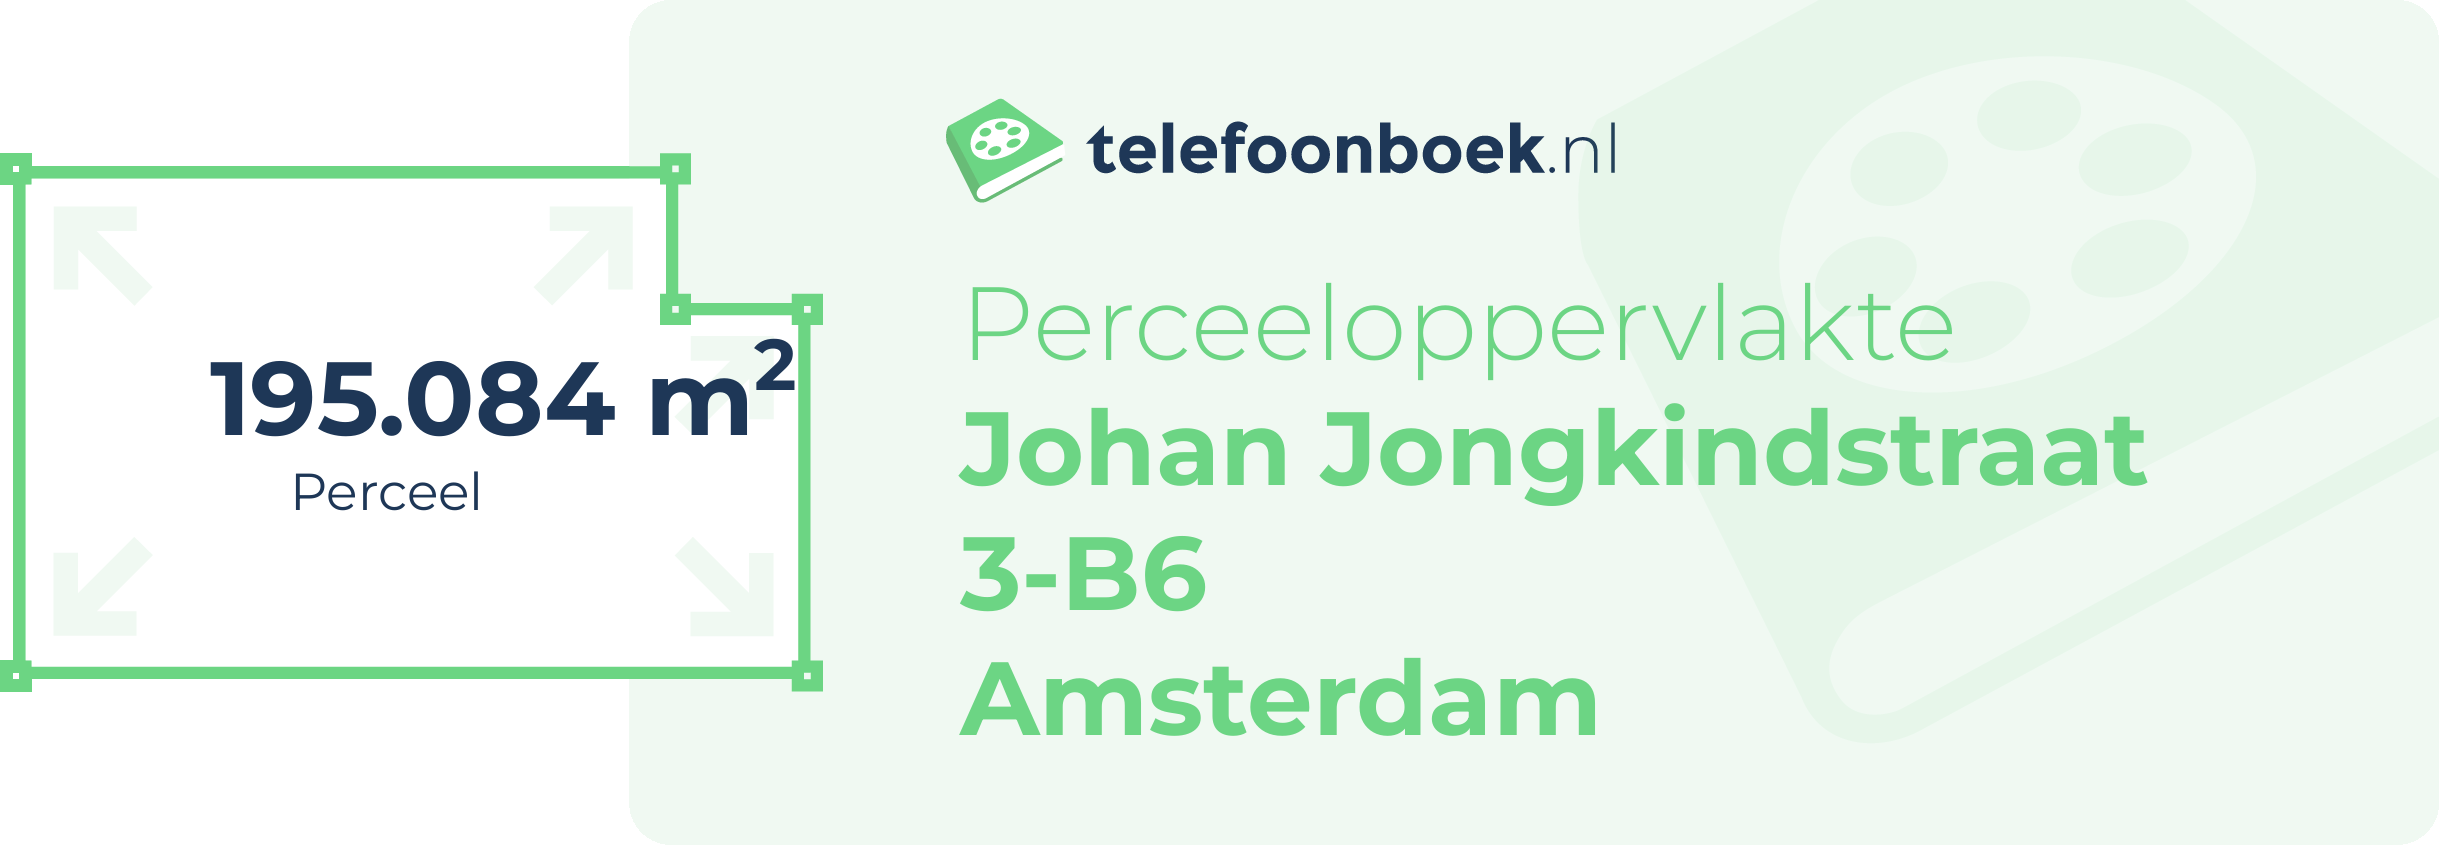 Perceeloppervlakte Johan Jongkindstraat 3-B6 Amsterdam